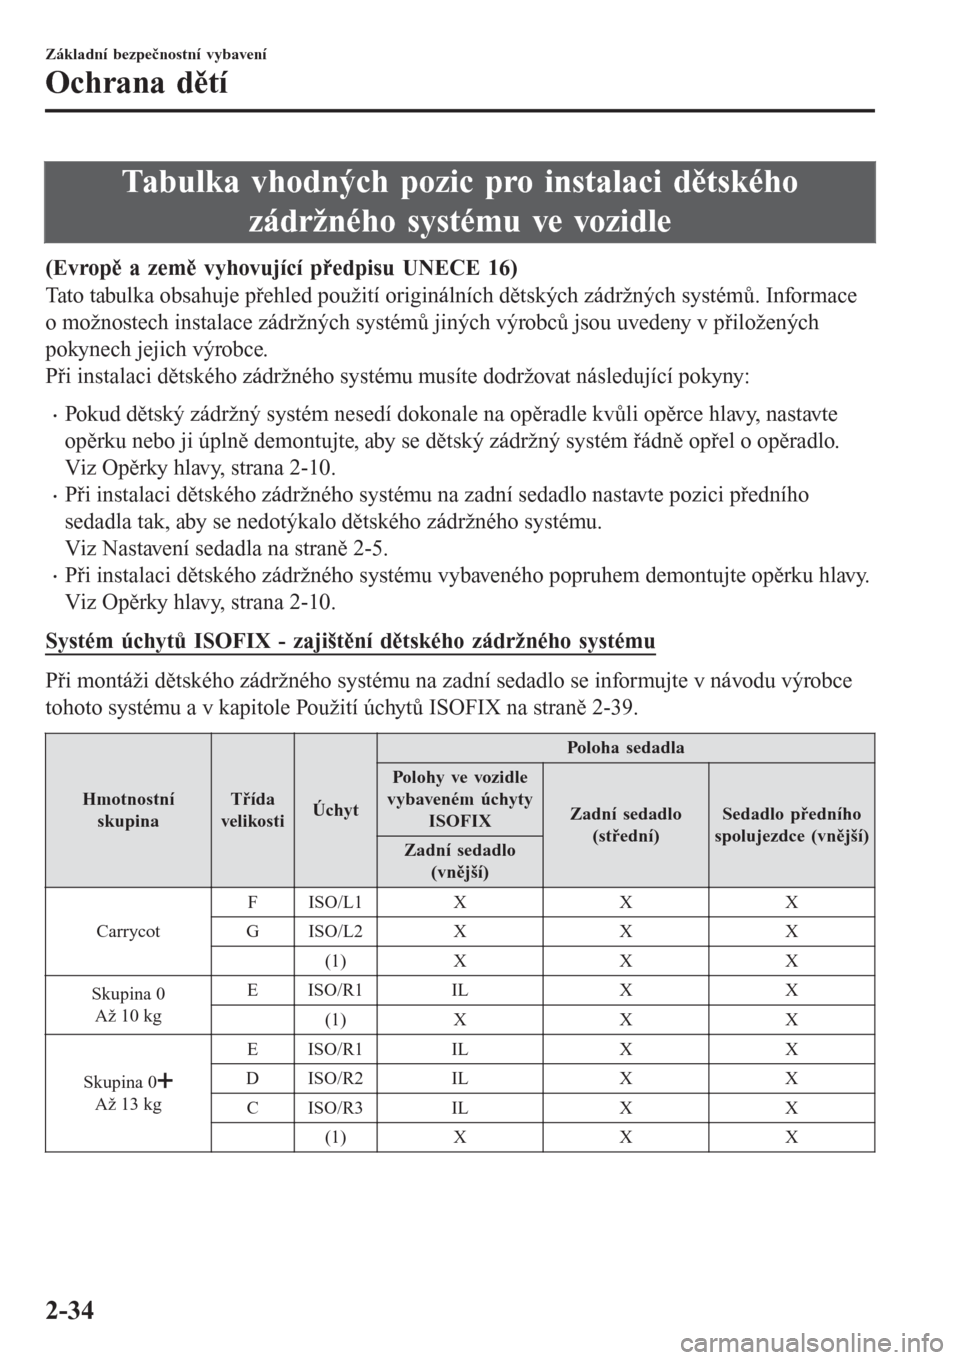 MAZDA MODEL CX-3 2016  Návod k obsluze (in Czech) Tabulka vhodných pozic pro instalaci dětského
zádržného systému ve vozidle
(Evropě a země vyhovující předpisu UNECE 16)
Tato tabulka obsahuje přehled použití originálních dětských z